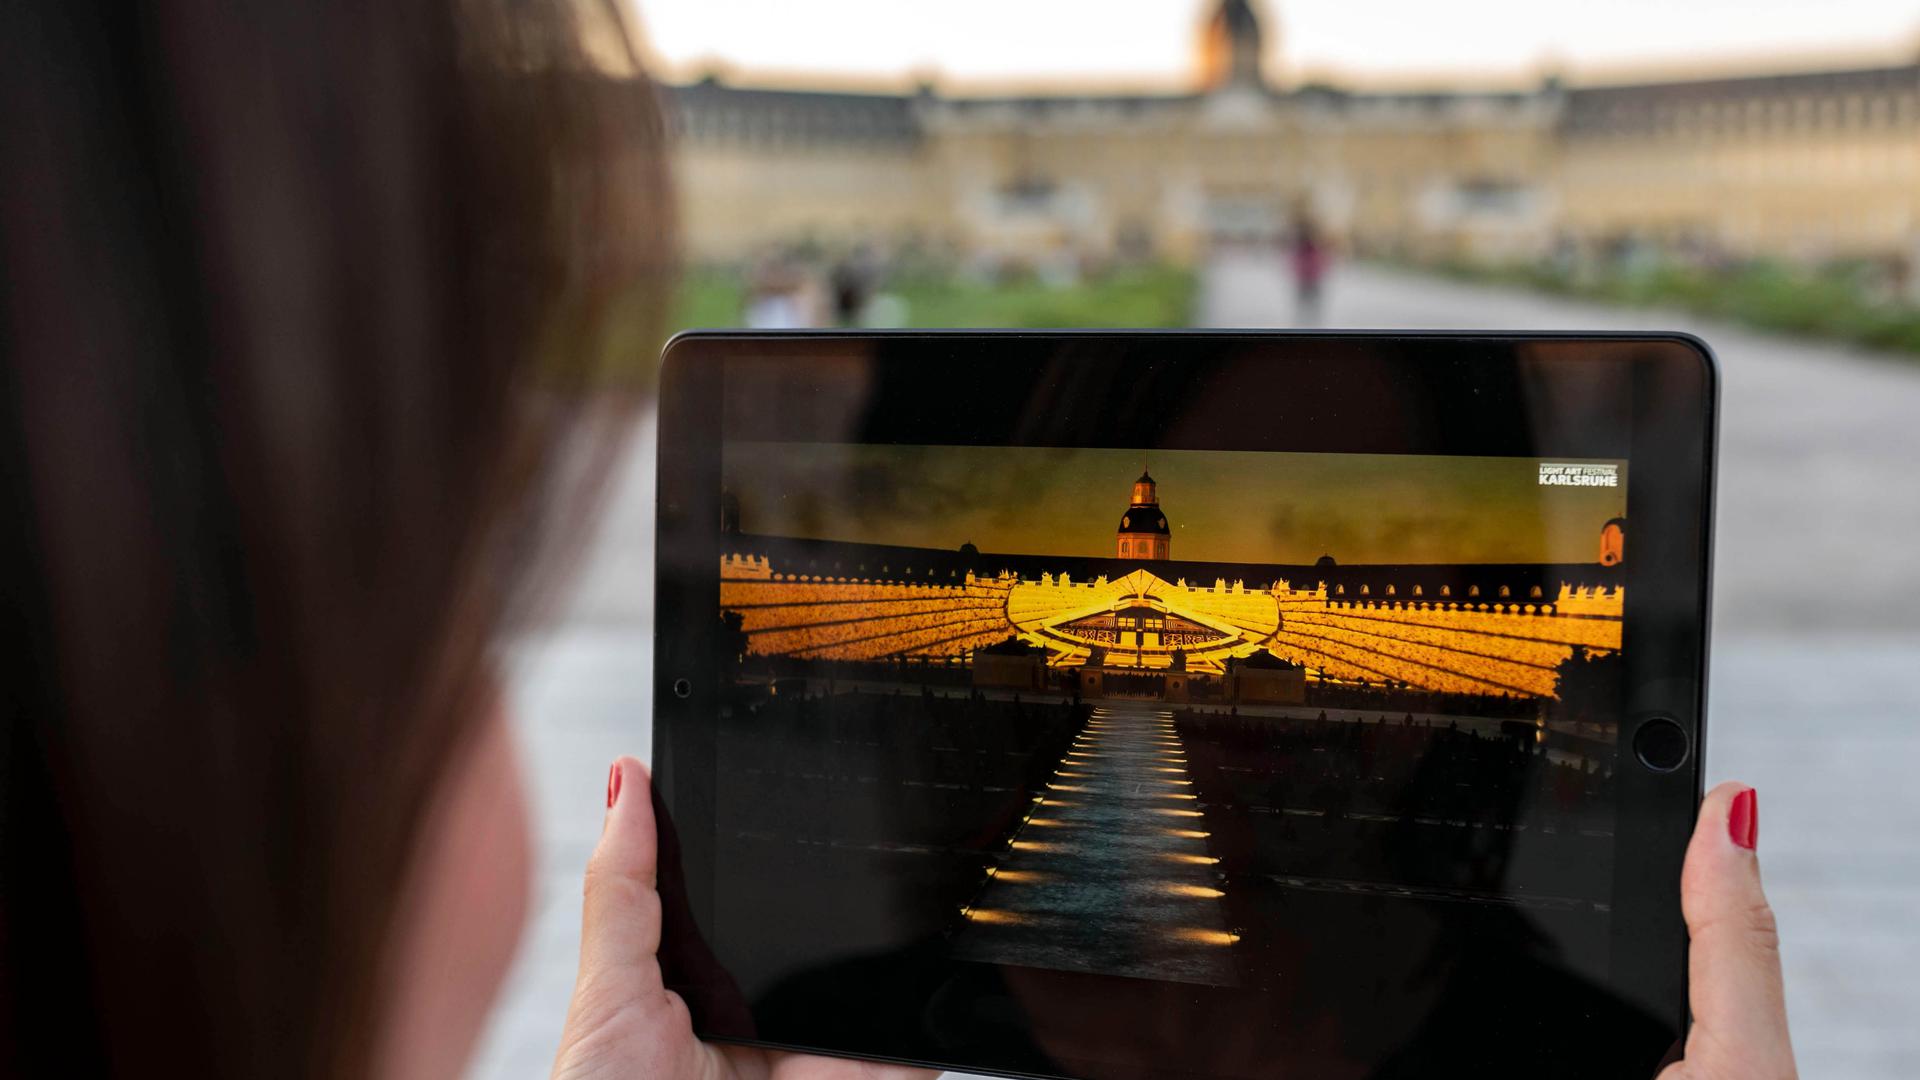 Vor dem Schloss Karlsruhe betrachtet eine Person auf einem Tablet einen Teil der Schlosslichtspiele, die 2020 wegen der Corona-Pandemie virtuell im Internet stattfinden mussten.